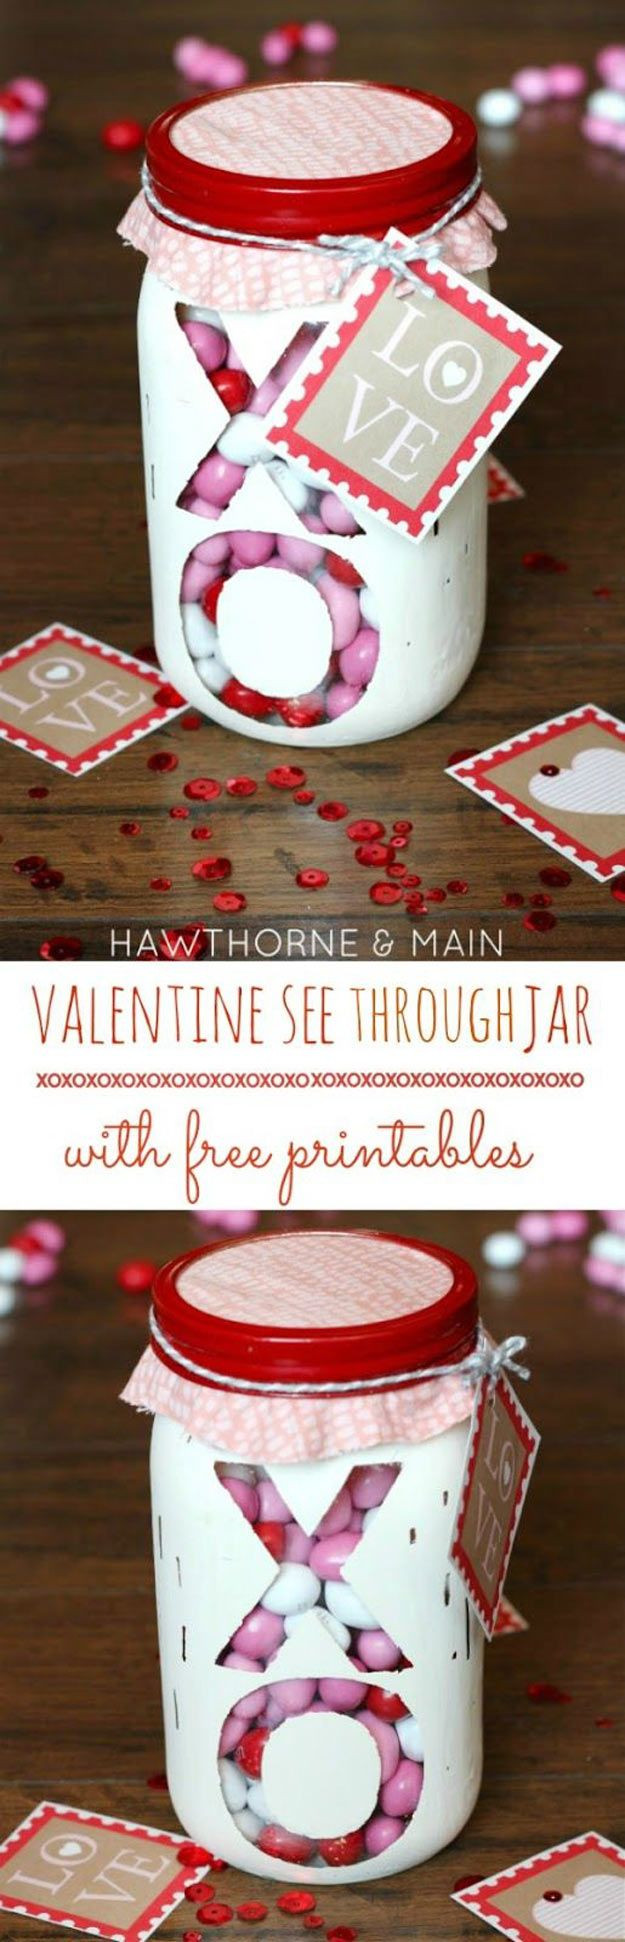 DIY Valentine Gift Ideas
 Best 25 Diy valentine s ts ideas on Pinterest